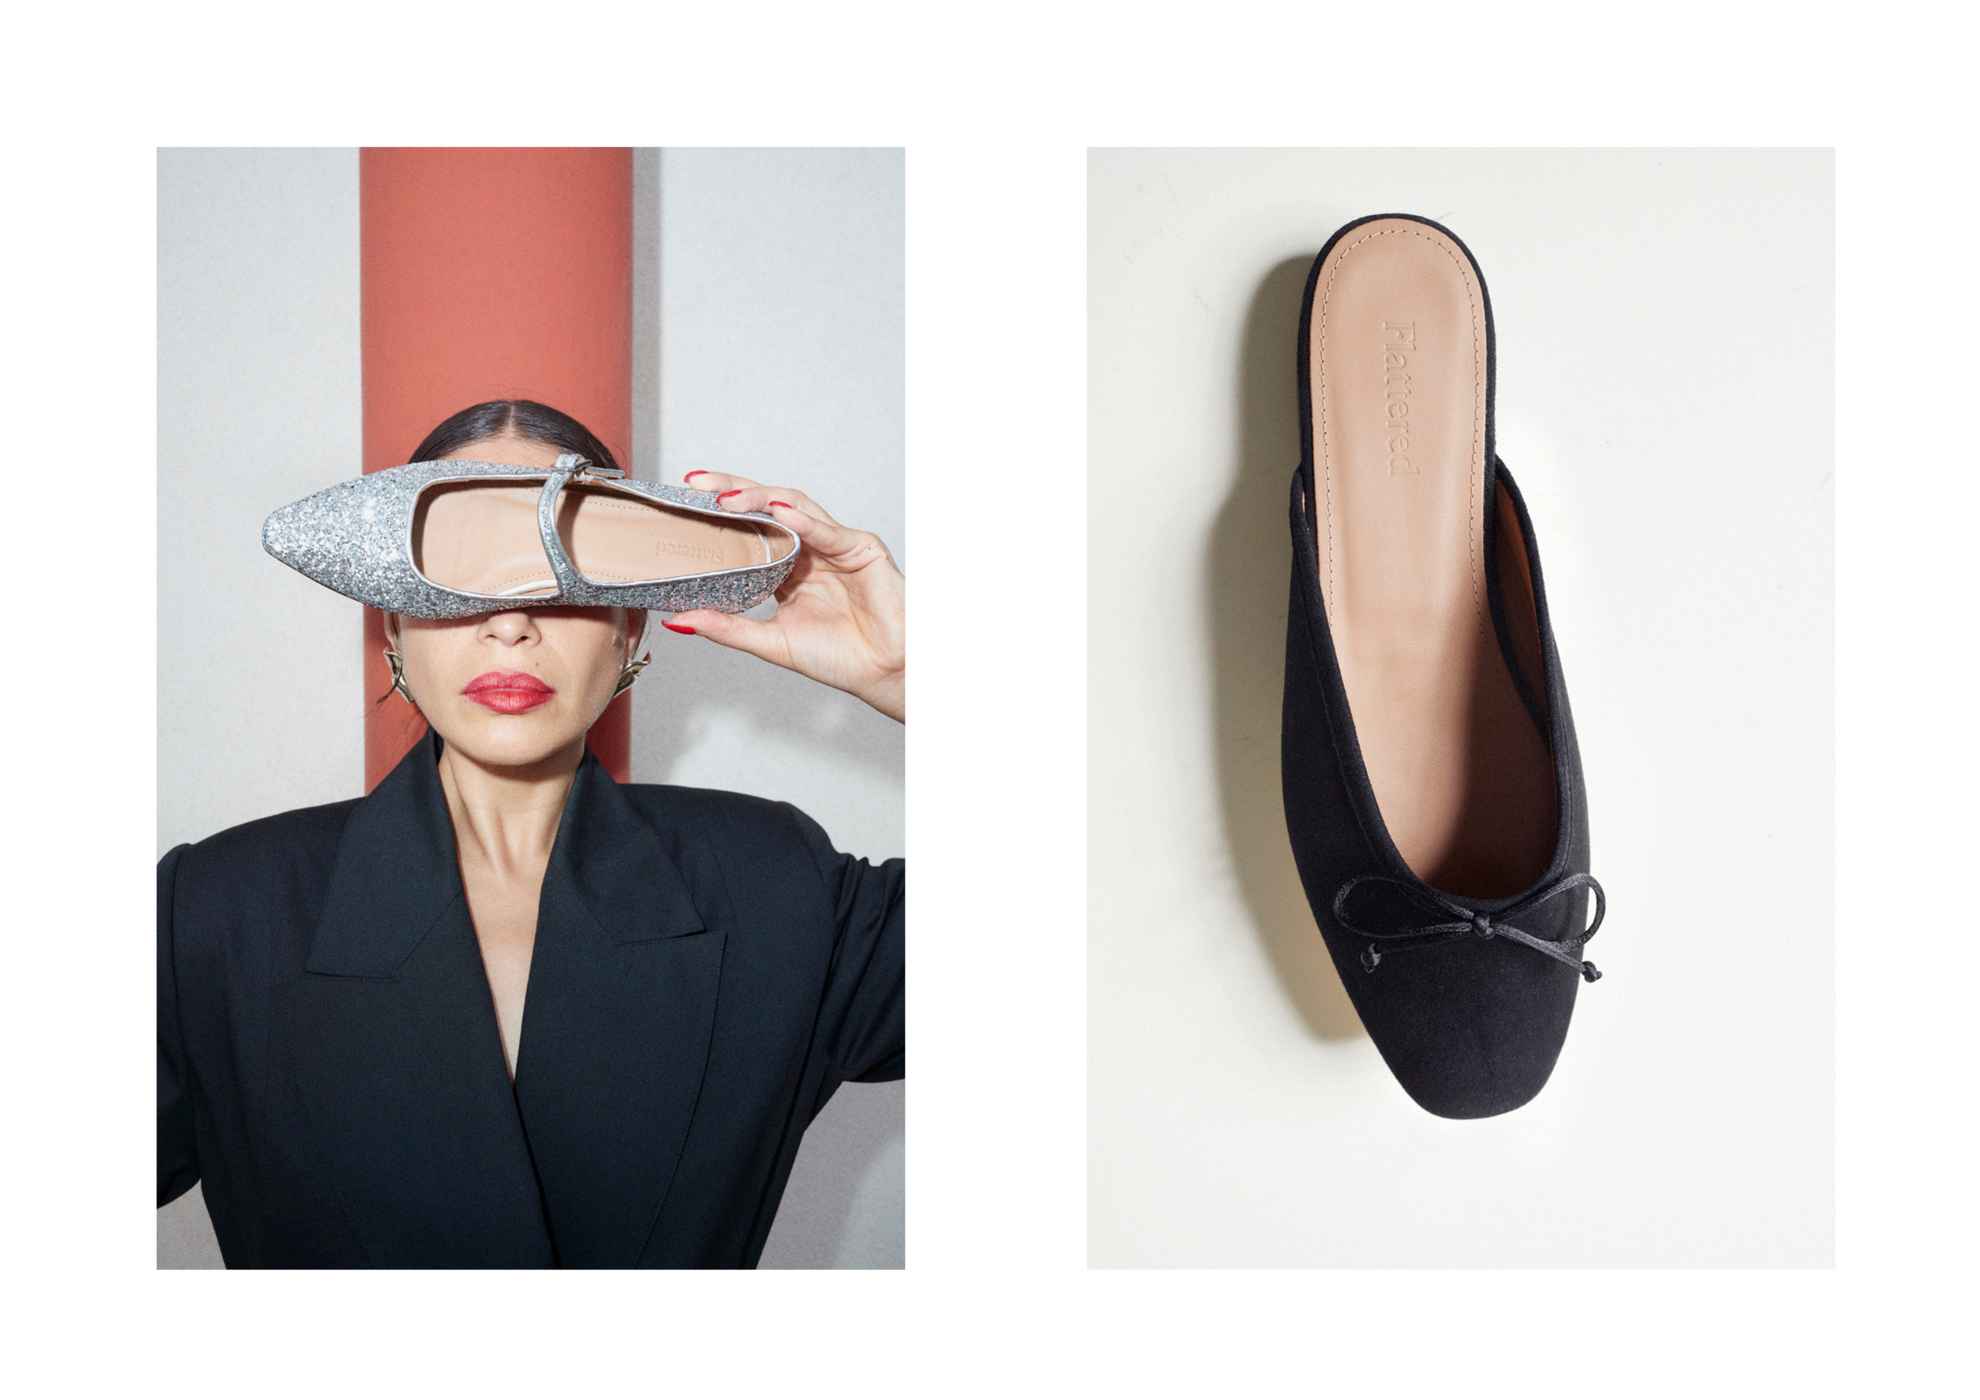 Twee afbeeldingen. Eén met een vrouw die een schoen voor haar ogen houdt en één met een zwarte ballerinaschoen op een witte ondergrond.